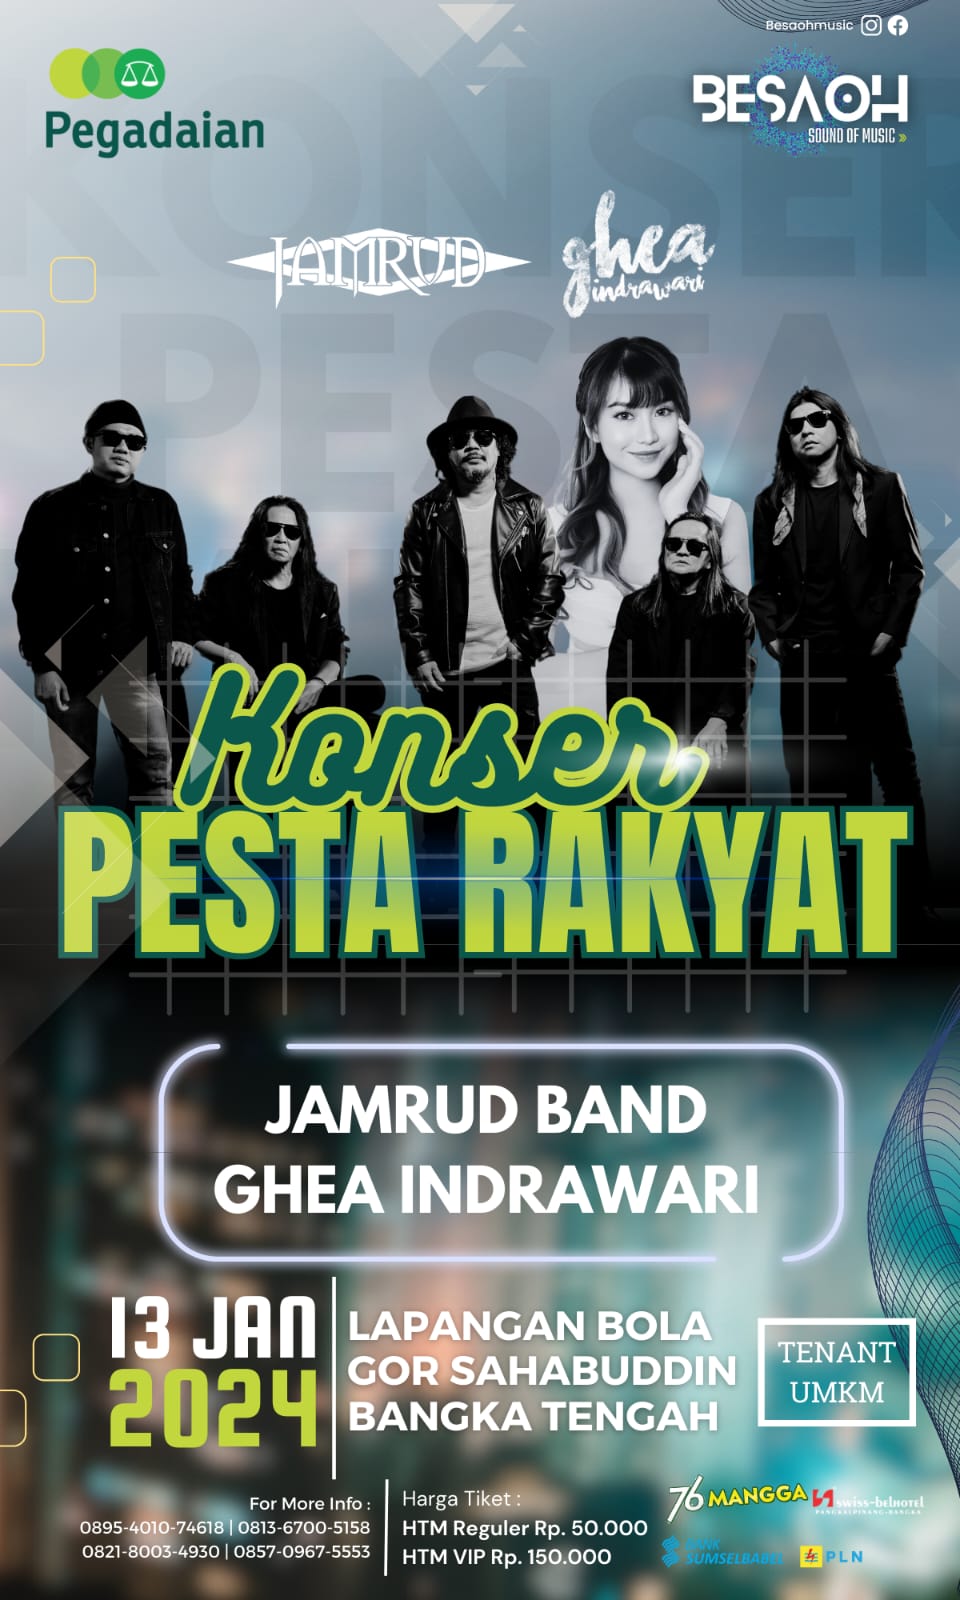 Band Jamrud dan Ghea Indrawari Akan Menghibur Masyarakat Bangka "Konser Pesta Rakyat" Di GOR Sahhabuddin